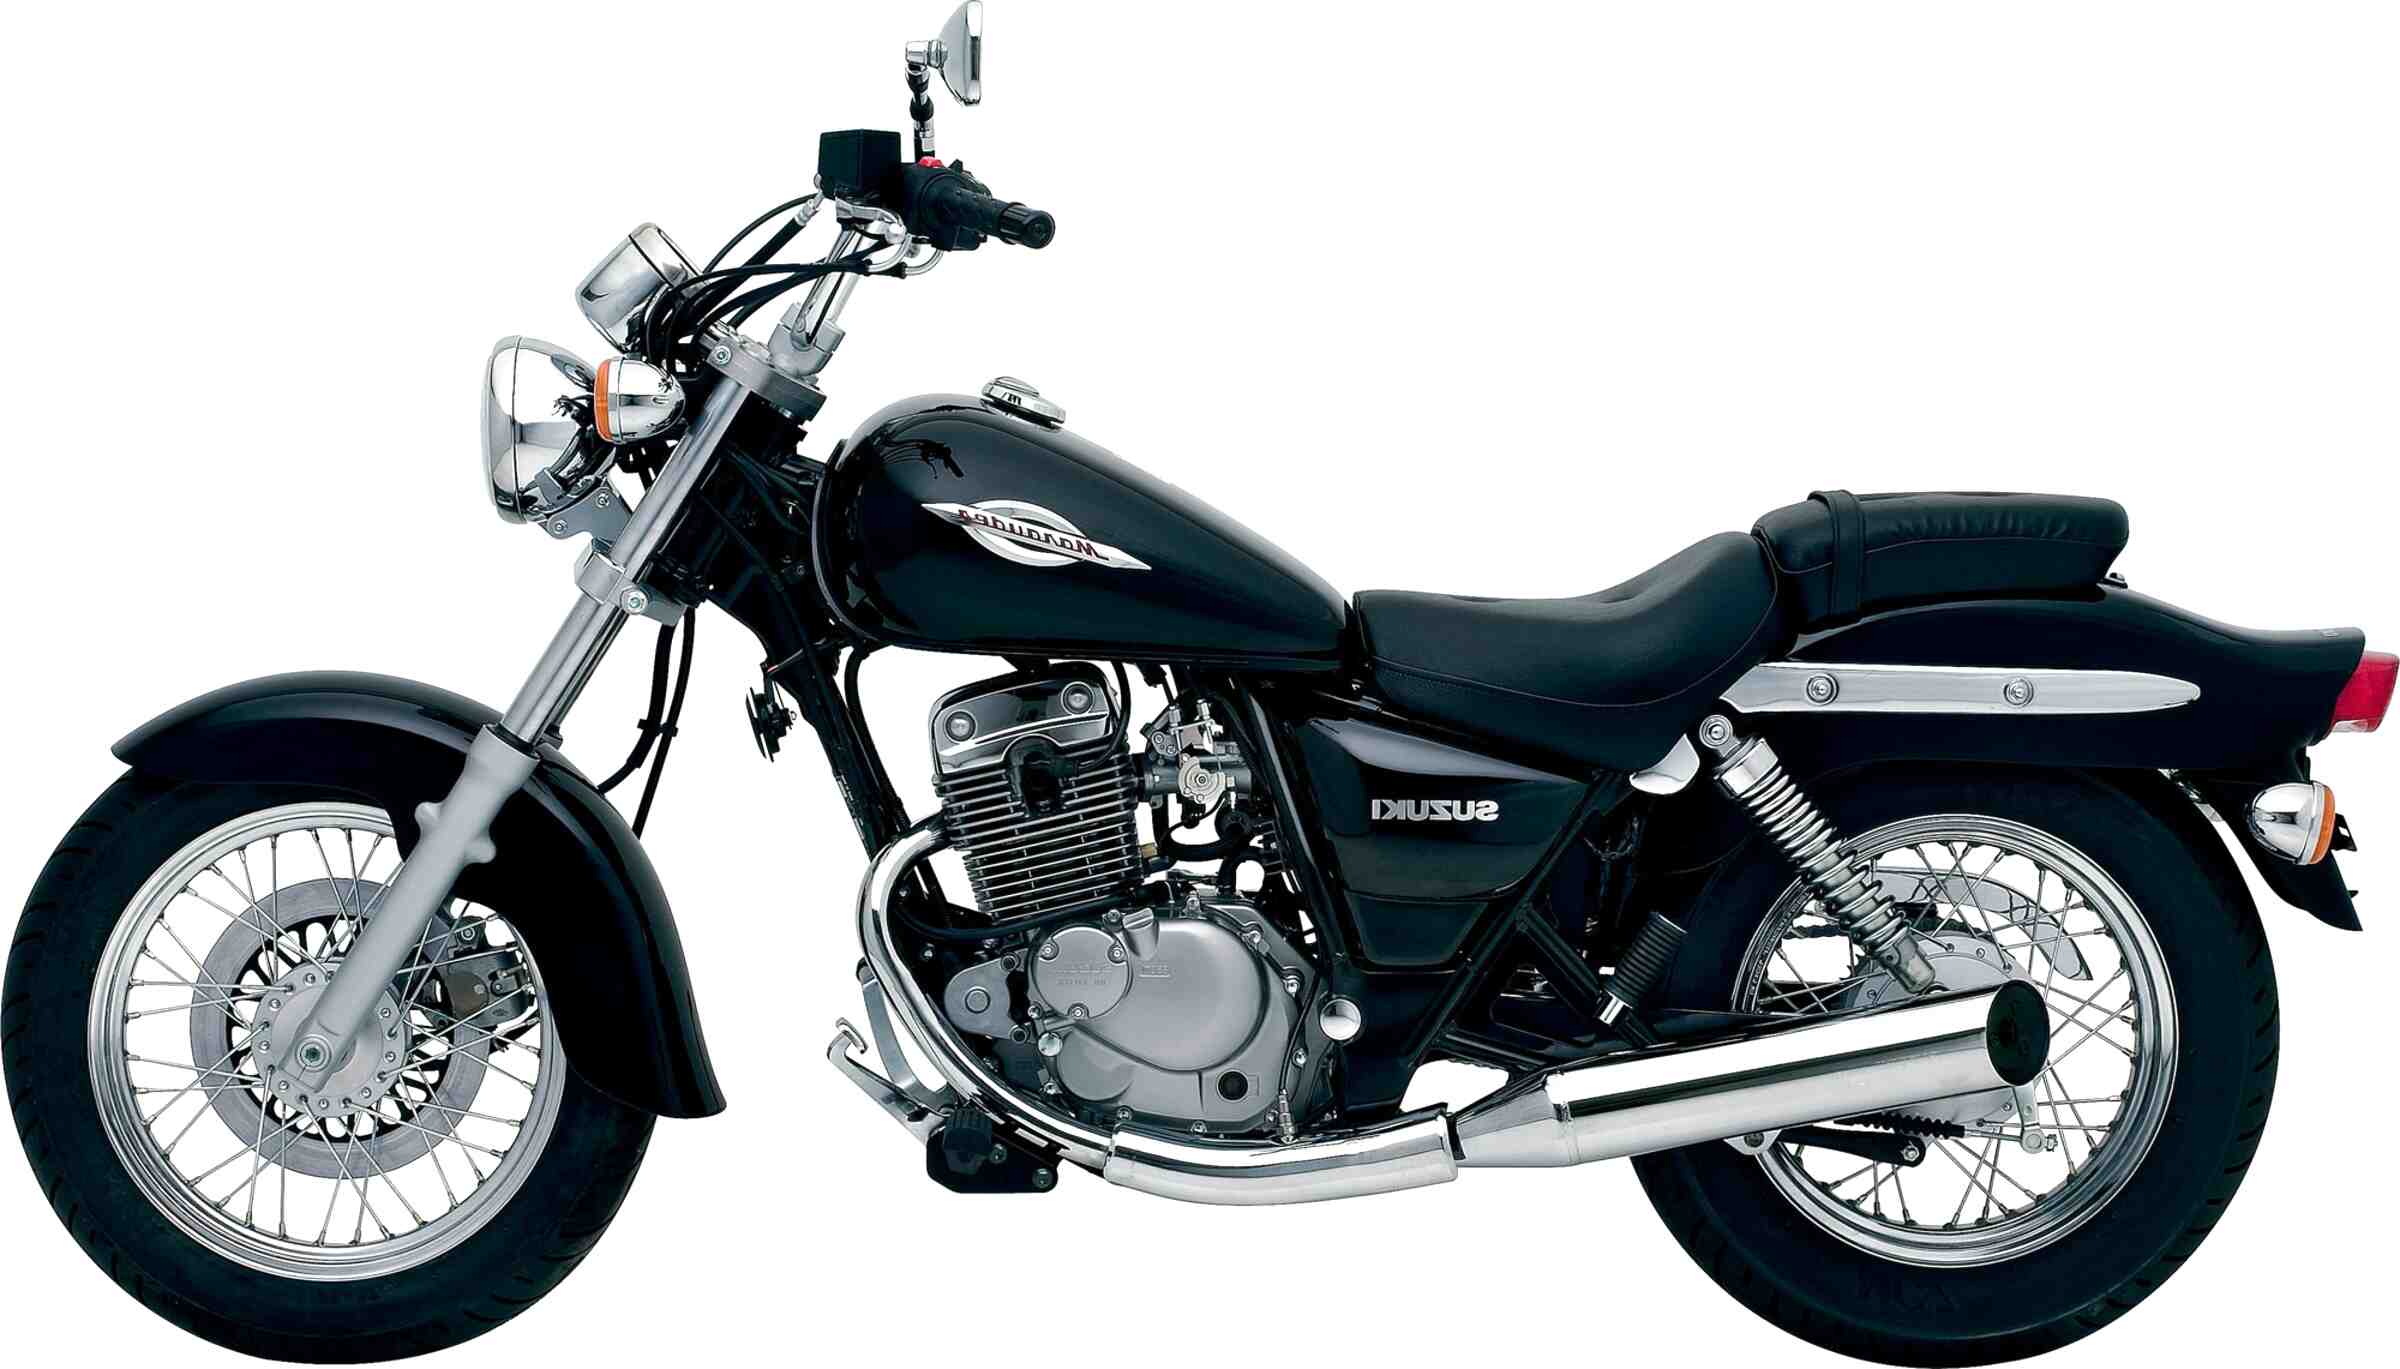  Suzuki Marauder  125 Motorcycle for sale in UK